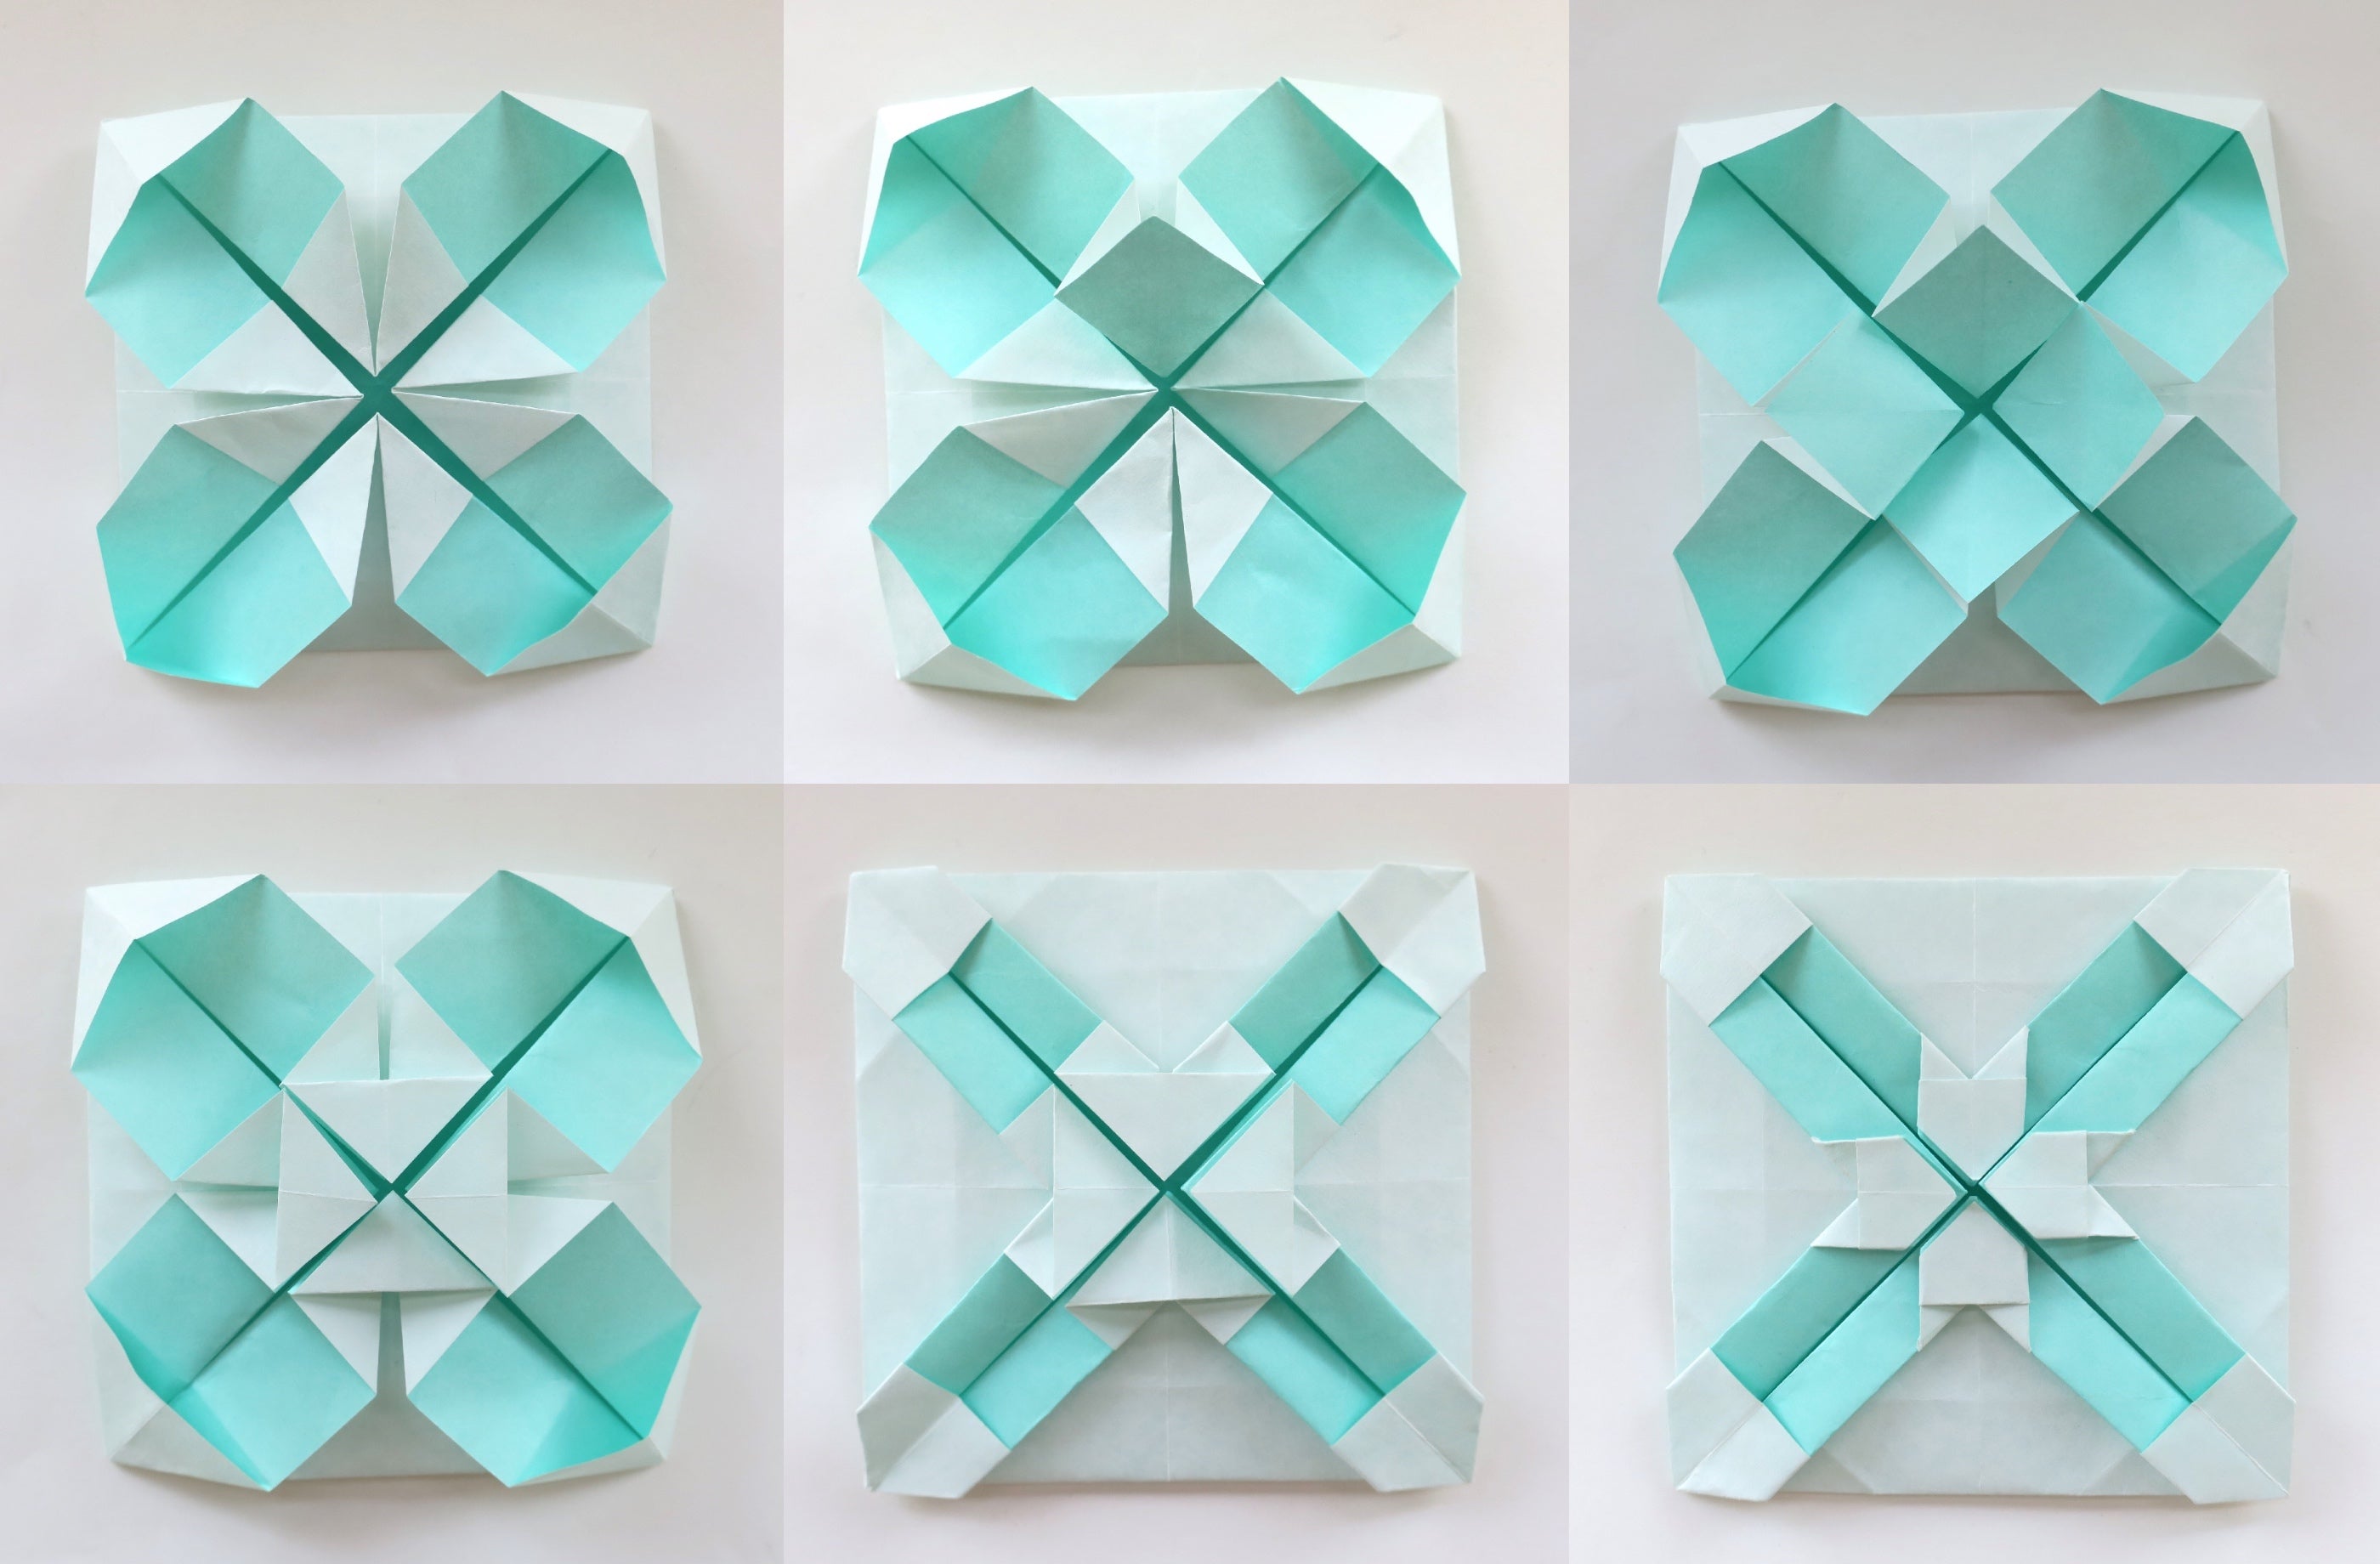 Origami Square Mosaic Tiles Tutorial